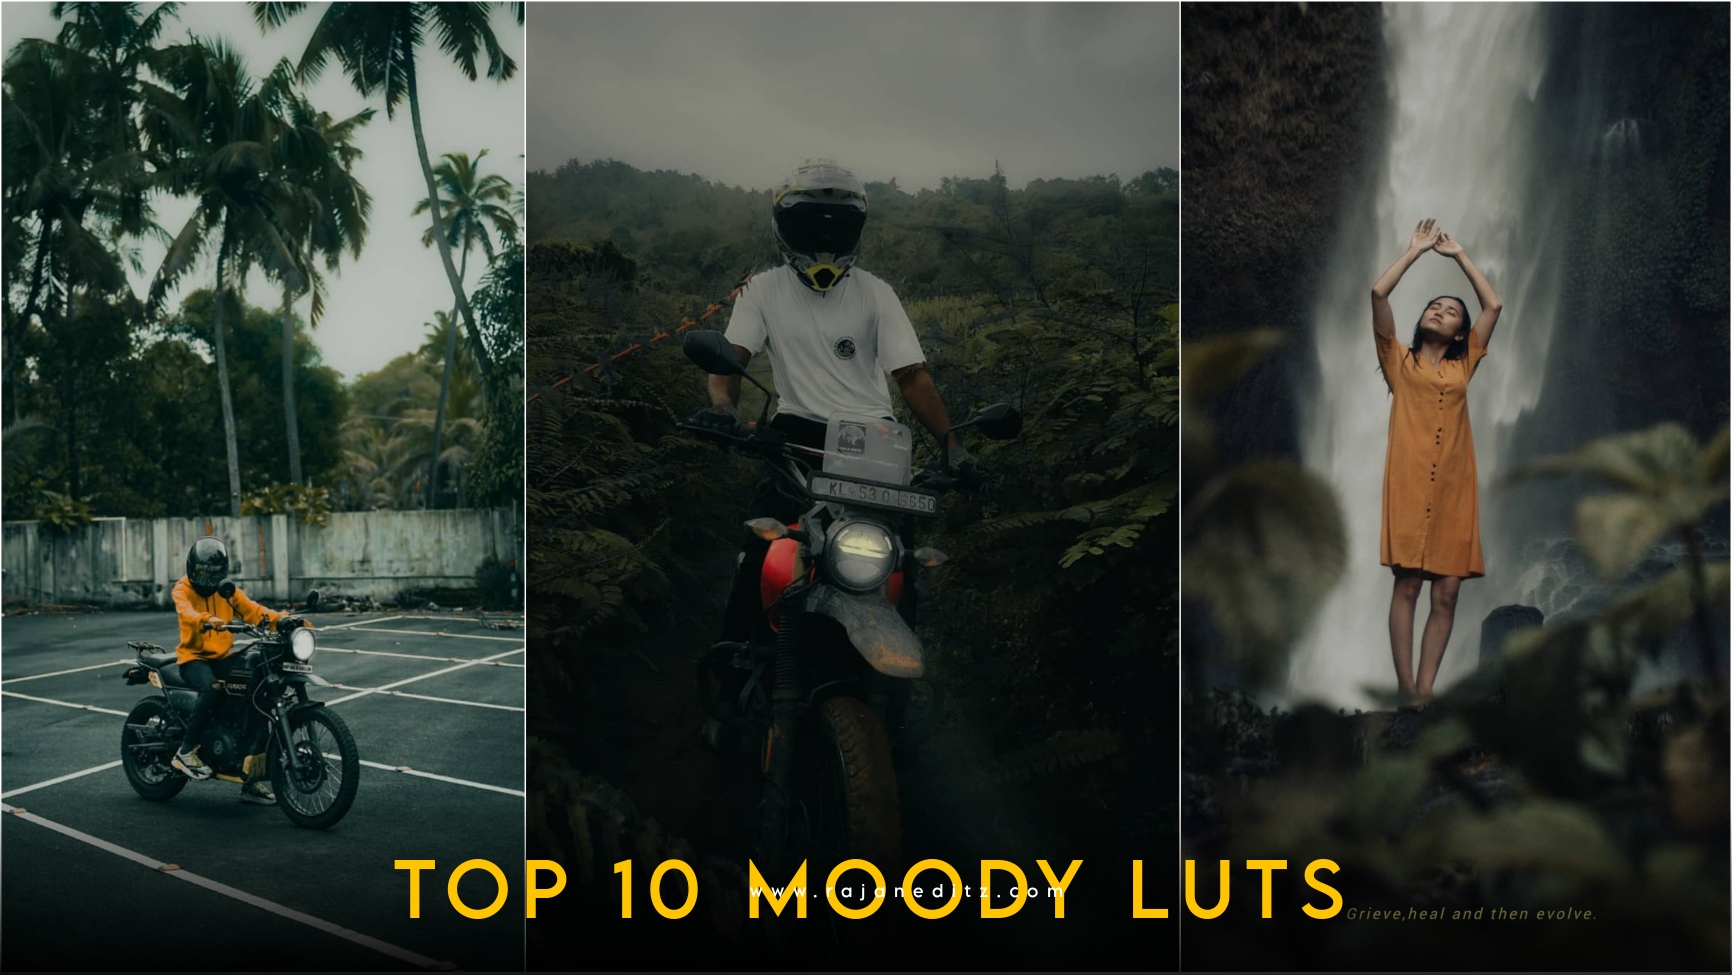 Top 10 Moody vn luts